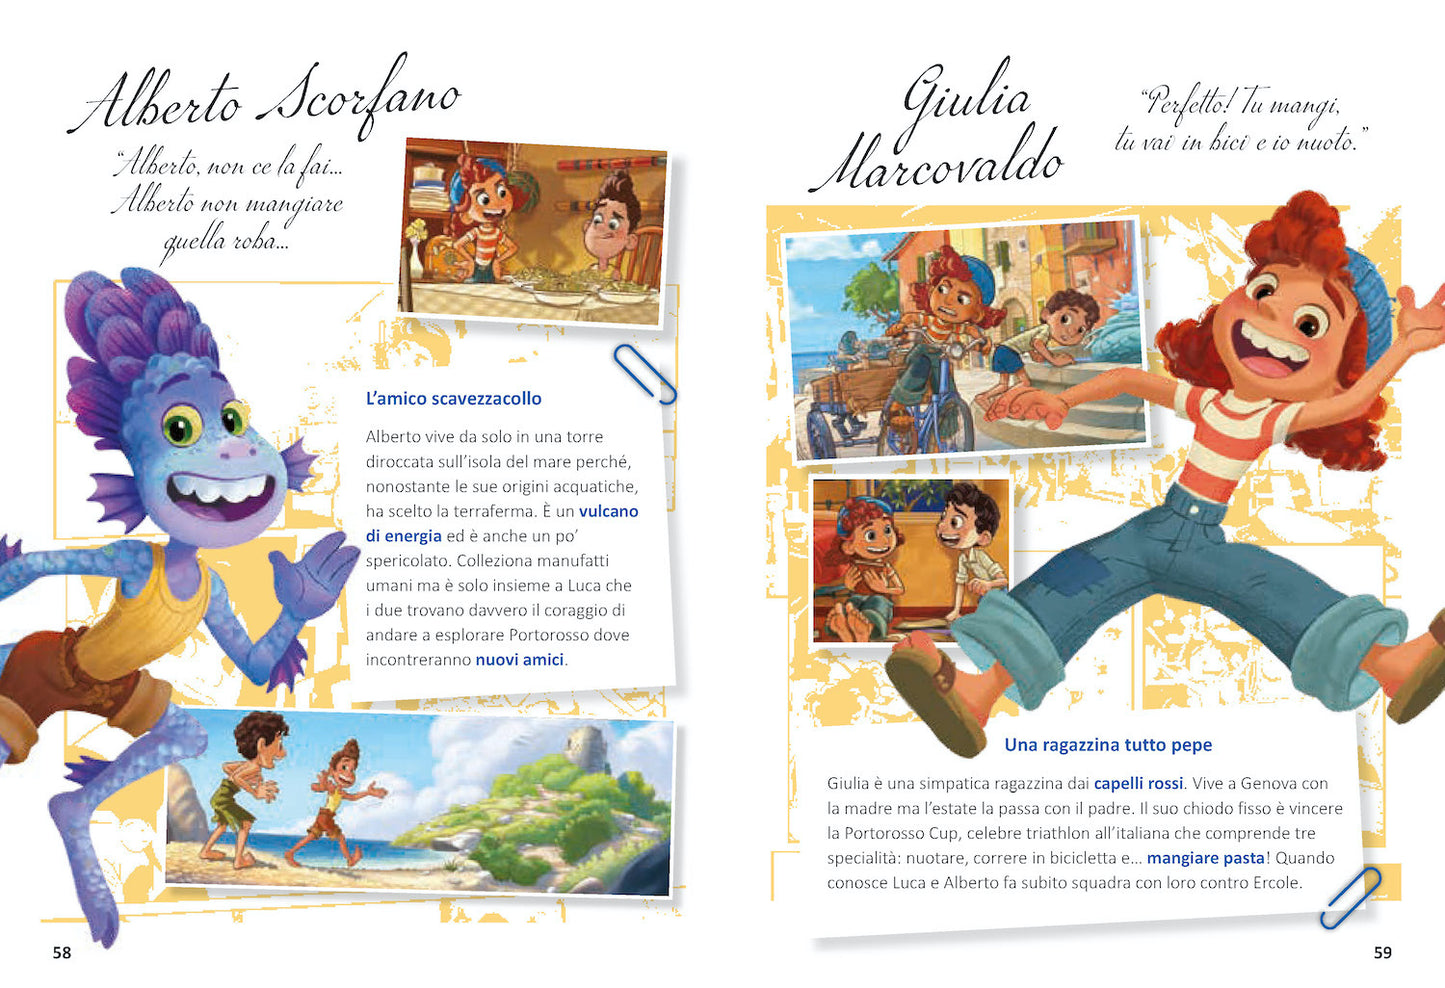 Luca La storia a fumetti Edizione limitata::Disney 100 Anni di meravigliose emozioni